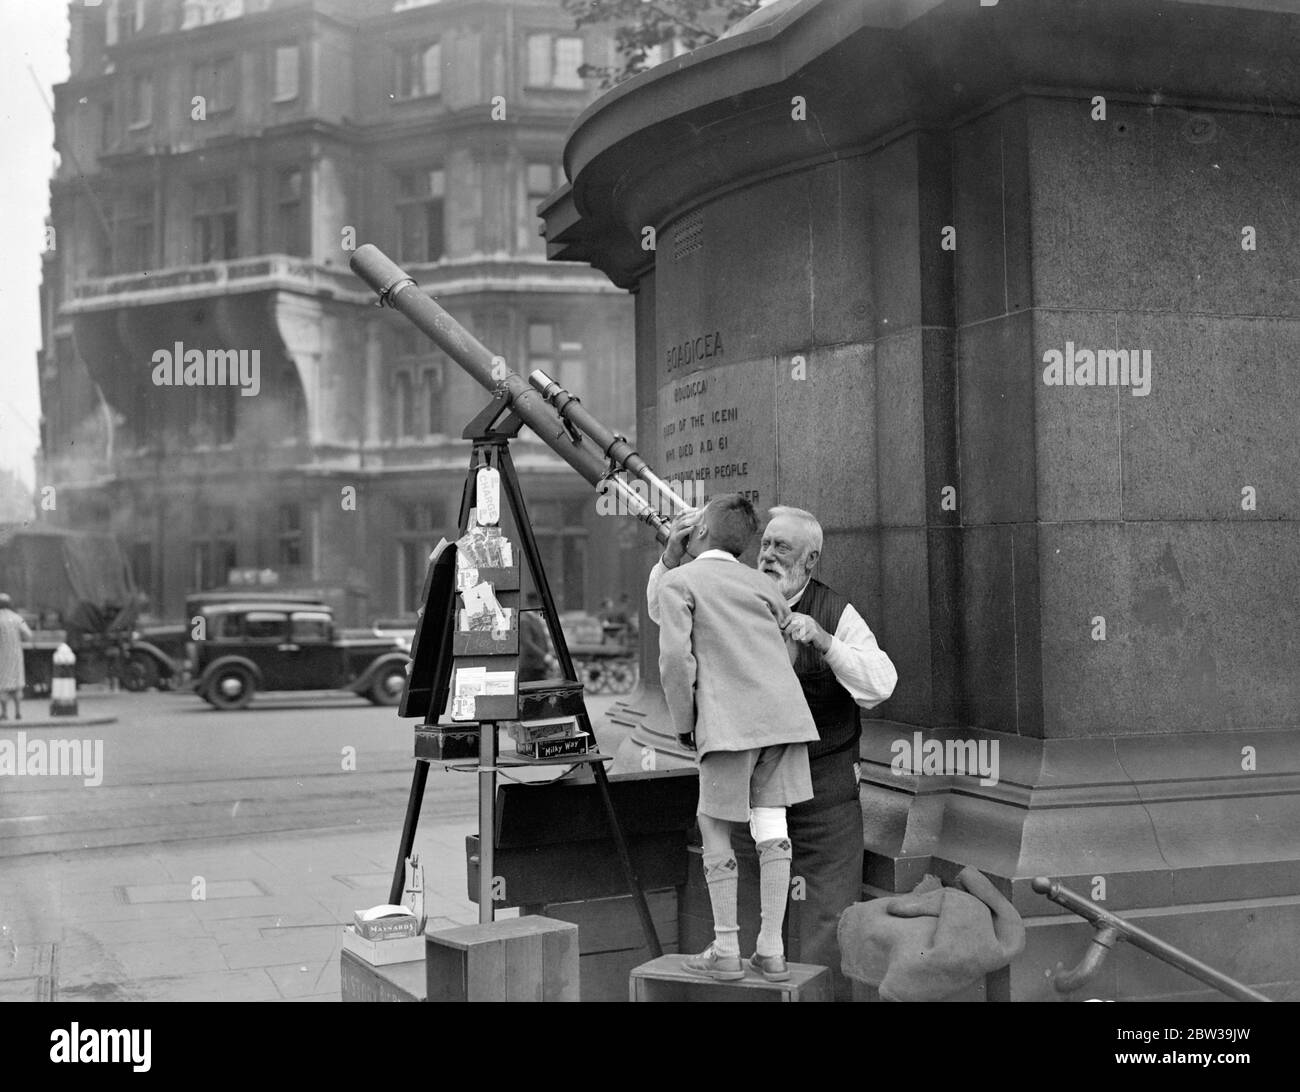 Le télescope de Londres célèbre la quarantième année sur son terrain . M. Edwin Crocker, quatre-vingt ans, a terminé sa quarantième année sur son terrain de Westminster Pier , où il permet aux gens de regarder à travers son télescope à la face de Big Ben à un penny à la fois . 22 juillet 1935 Banque D'Images